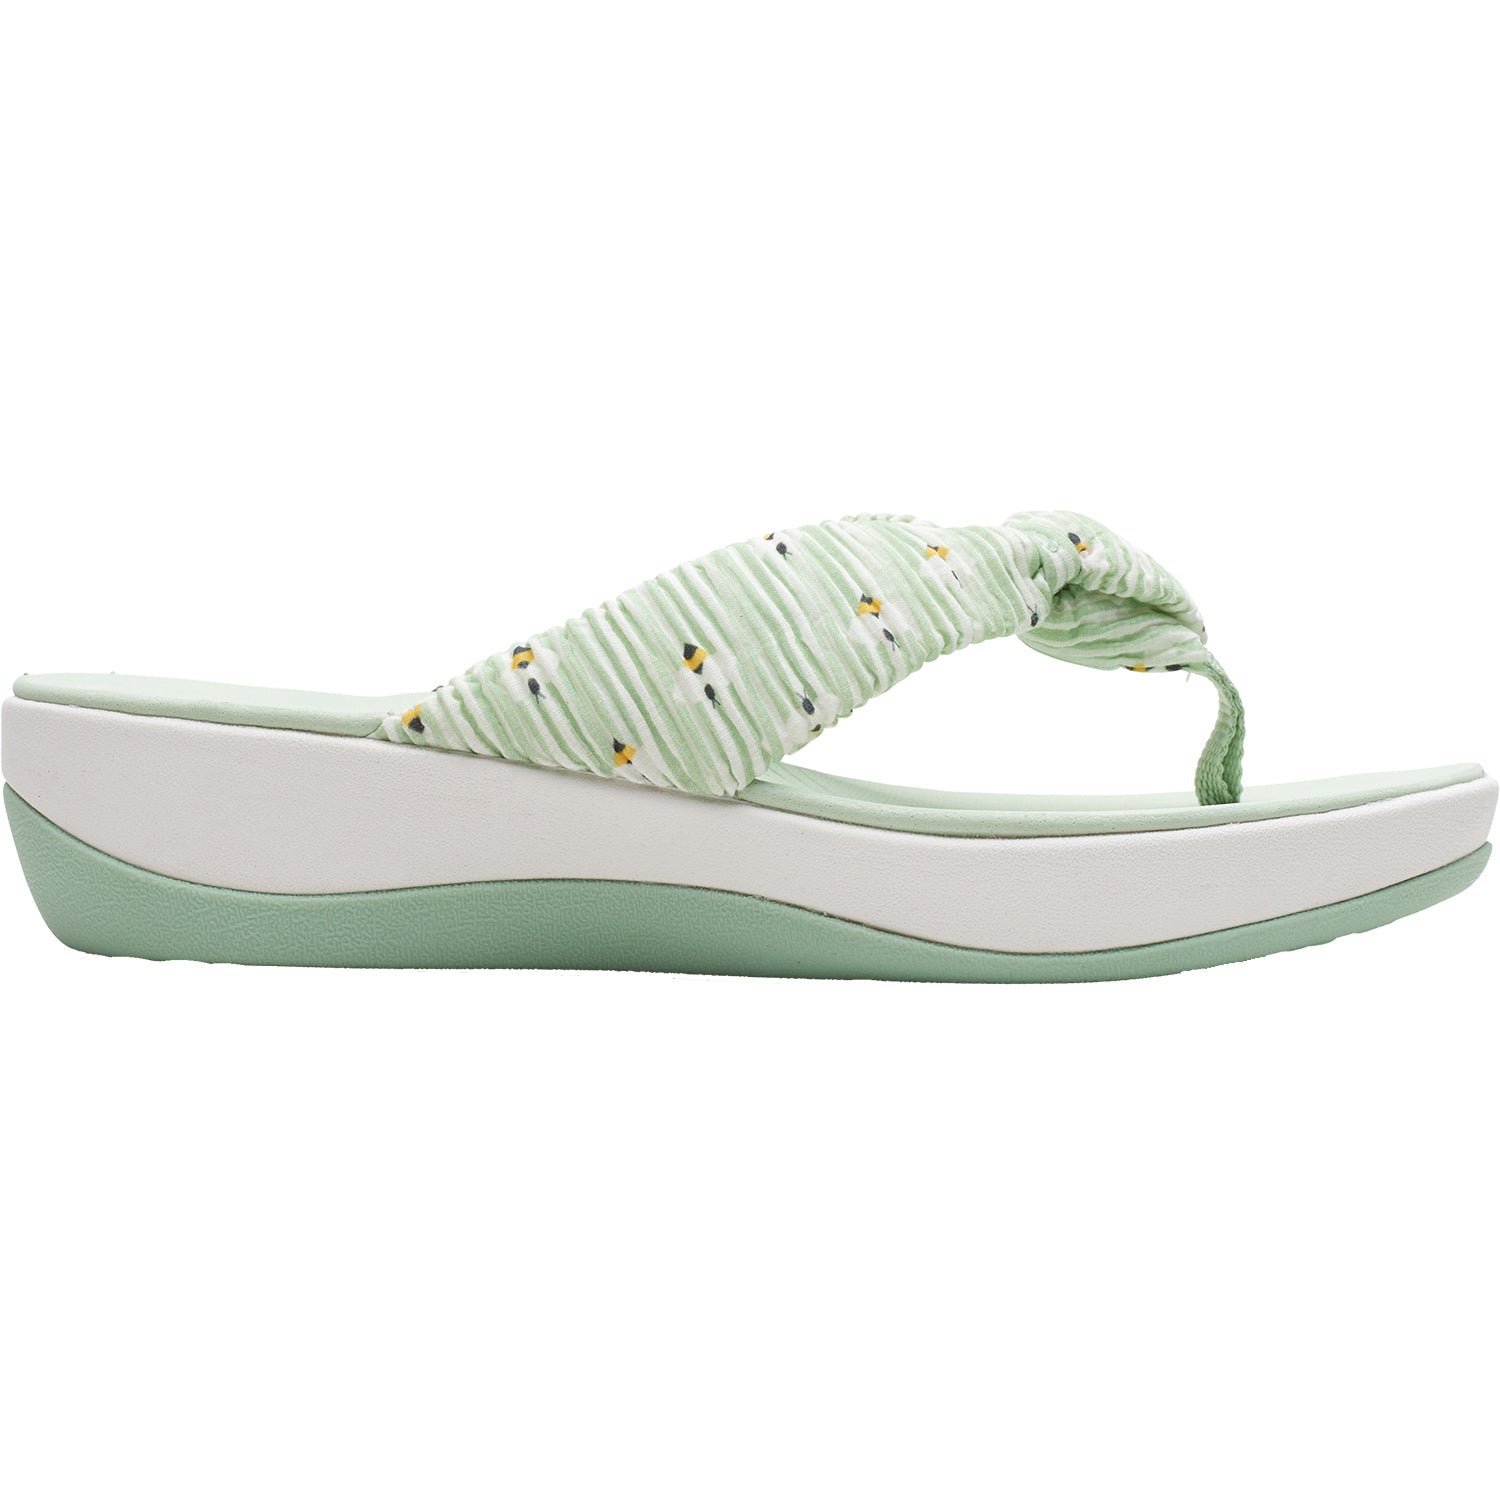 Clarks Glison Pale Green | Women's Sandals Footwear